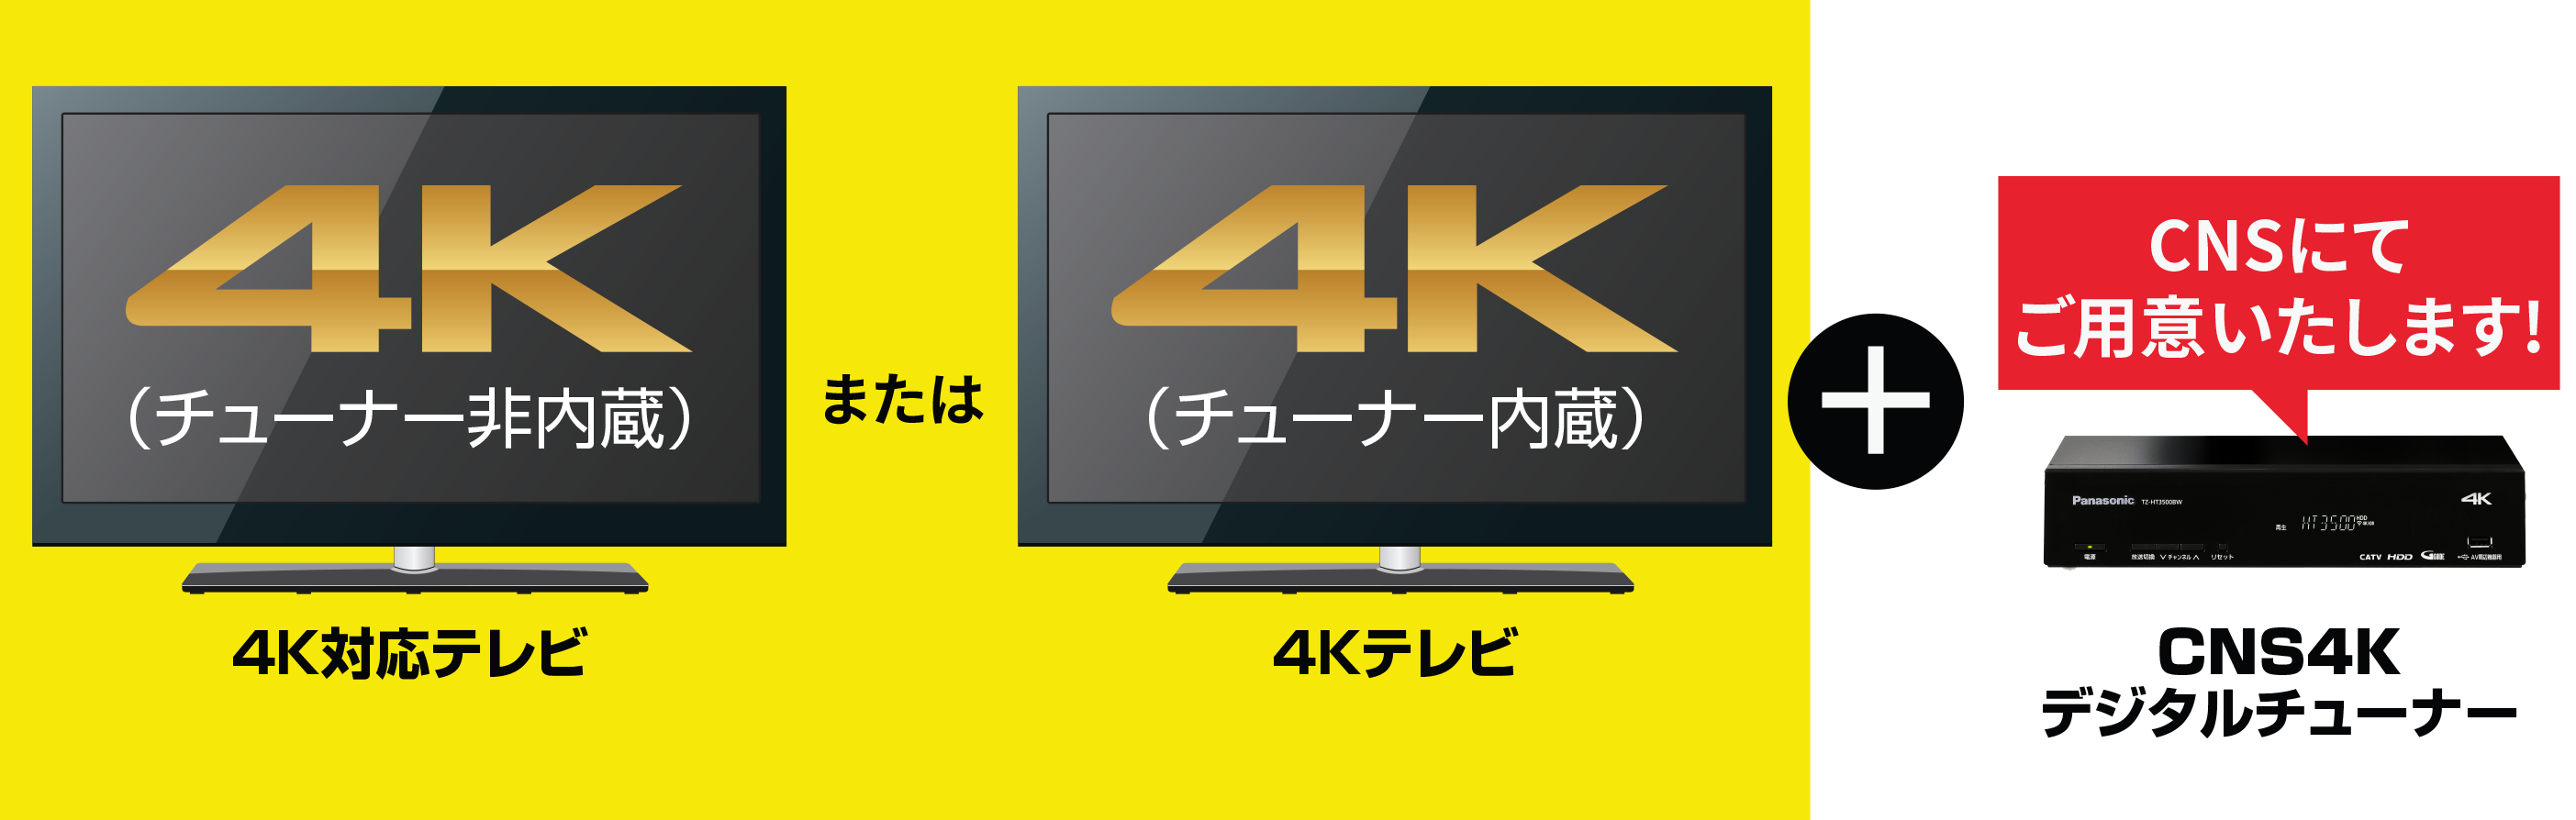 4K放送対応のテレビをご用意くださいのイメージ図